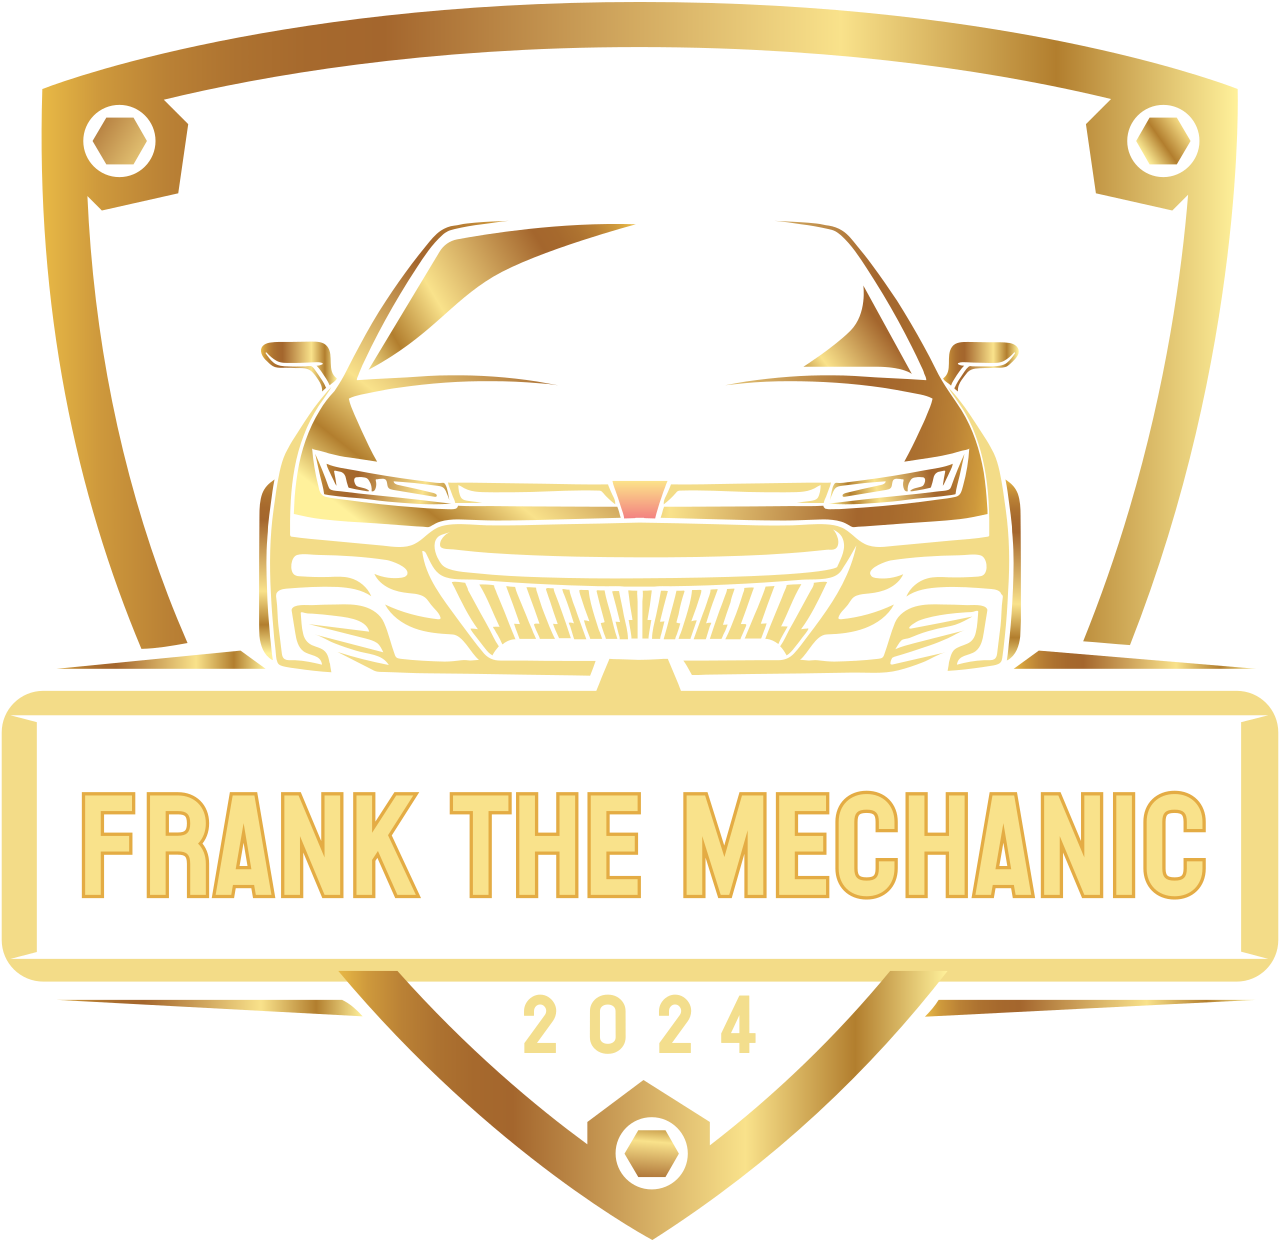 Frank the Mechanic 's logo